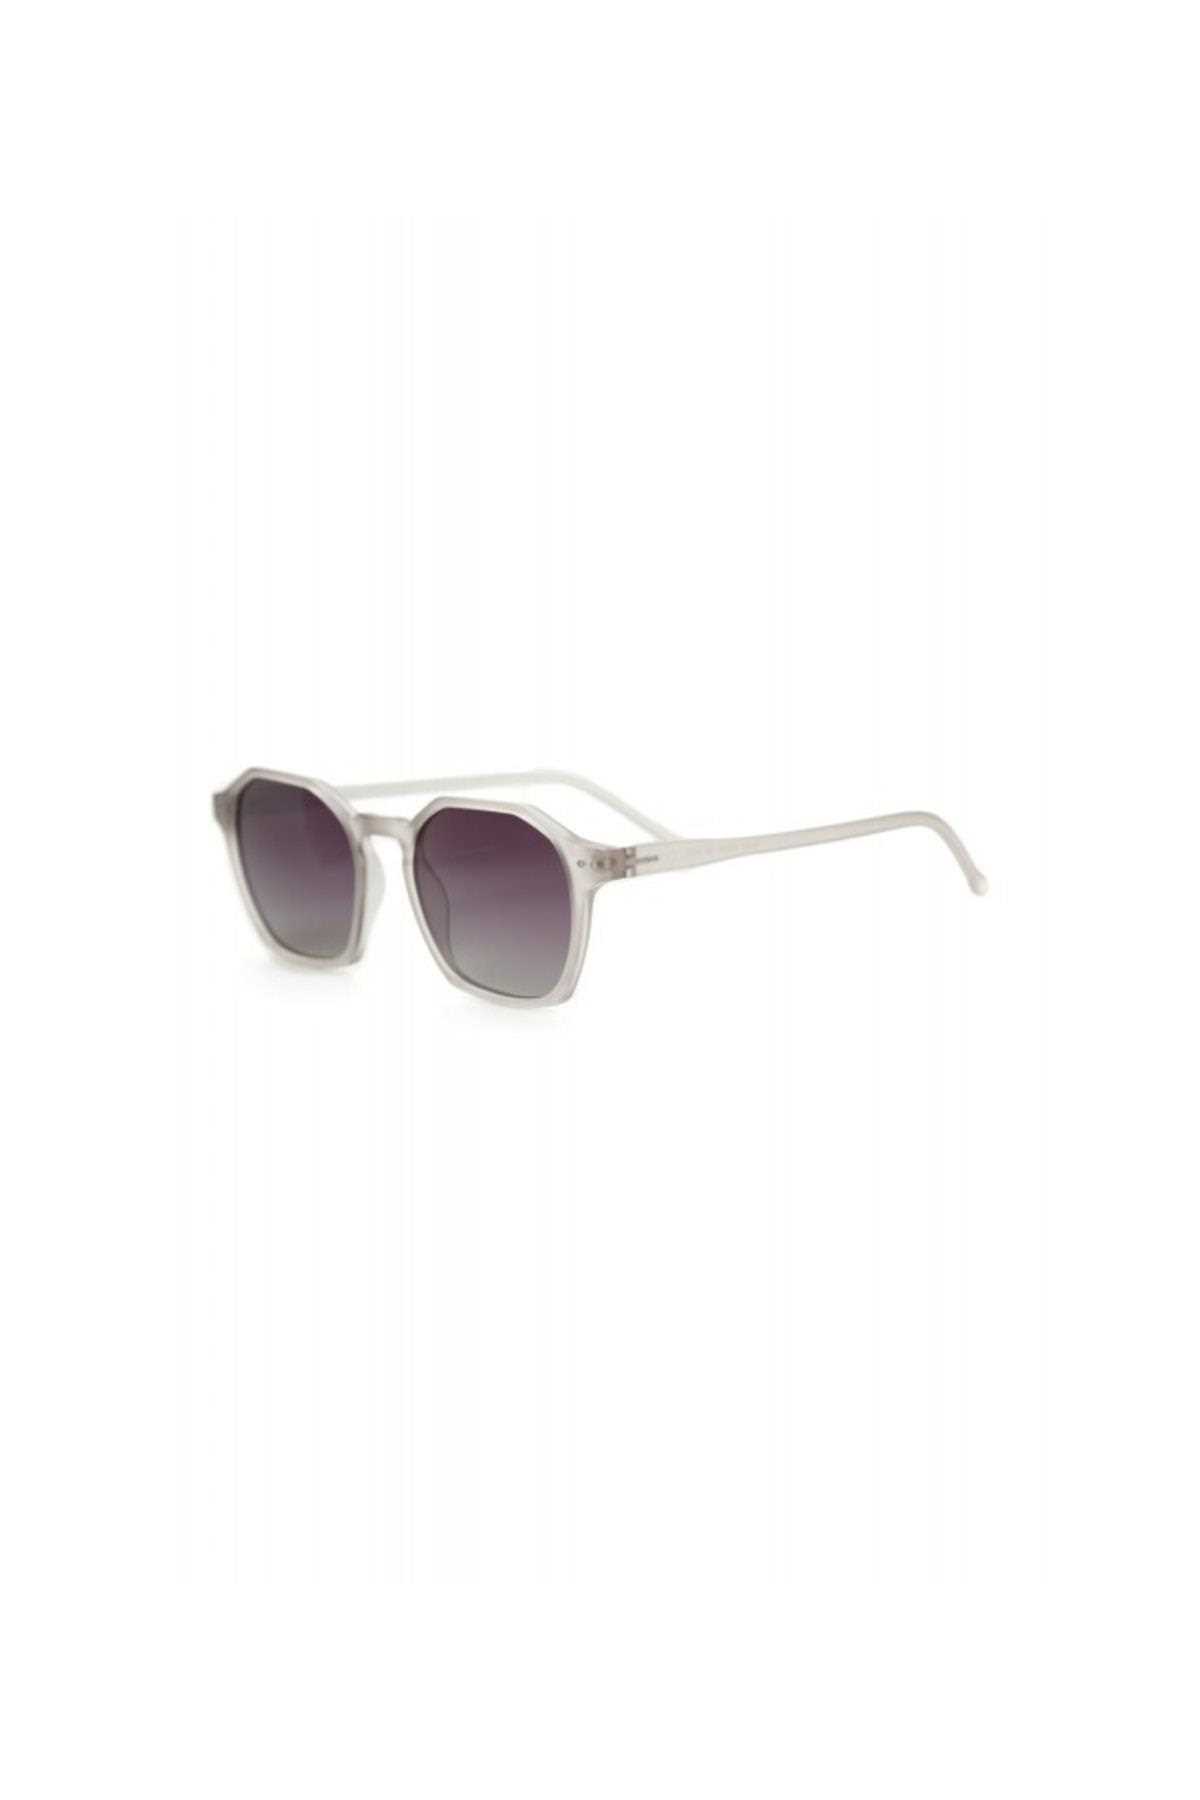 عینک آفتابی زنانه طرح جدید برند Swing کد ty274491479